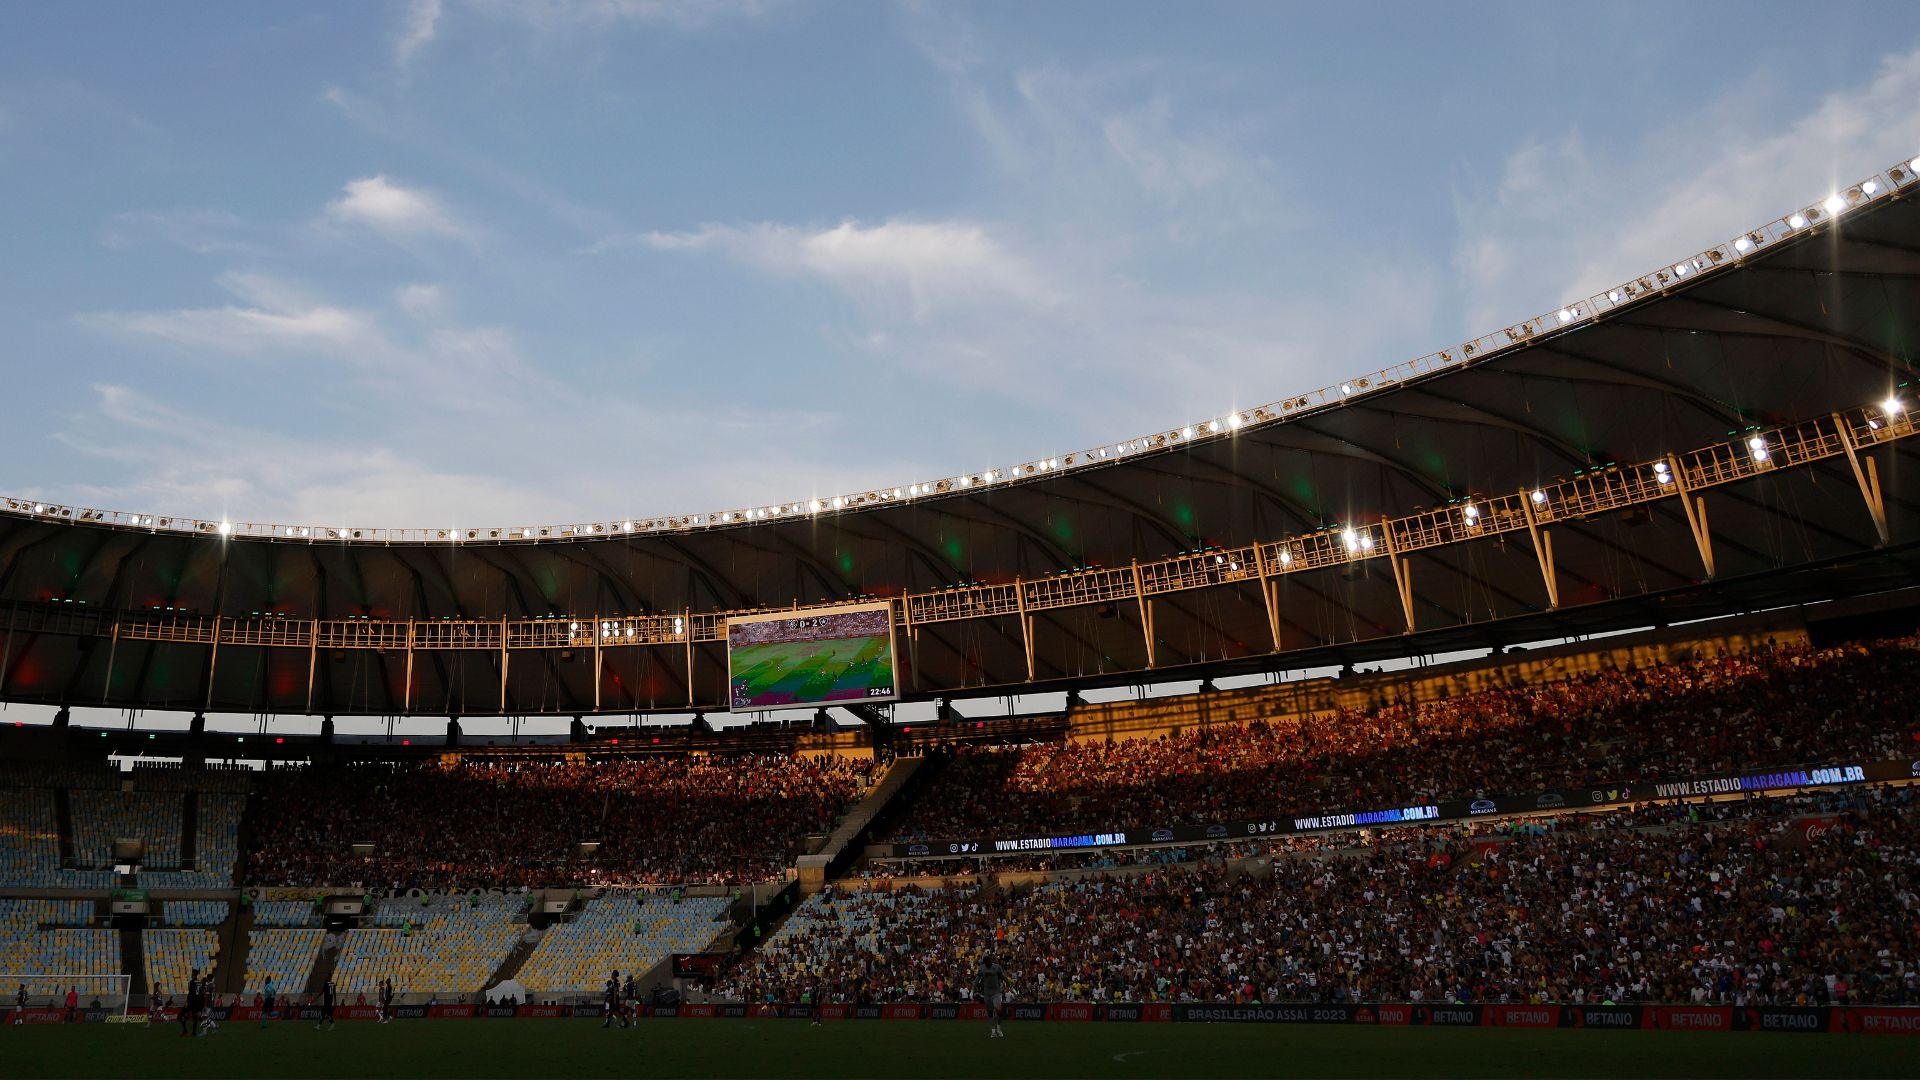 Última partida que o Maracanã recebeu foi Fluminense e Botafogo, pelo Brasileirão (Crédito: Getty Images)